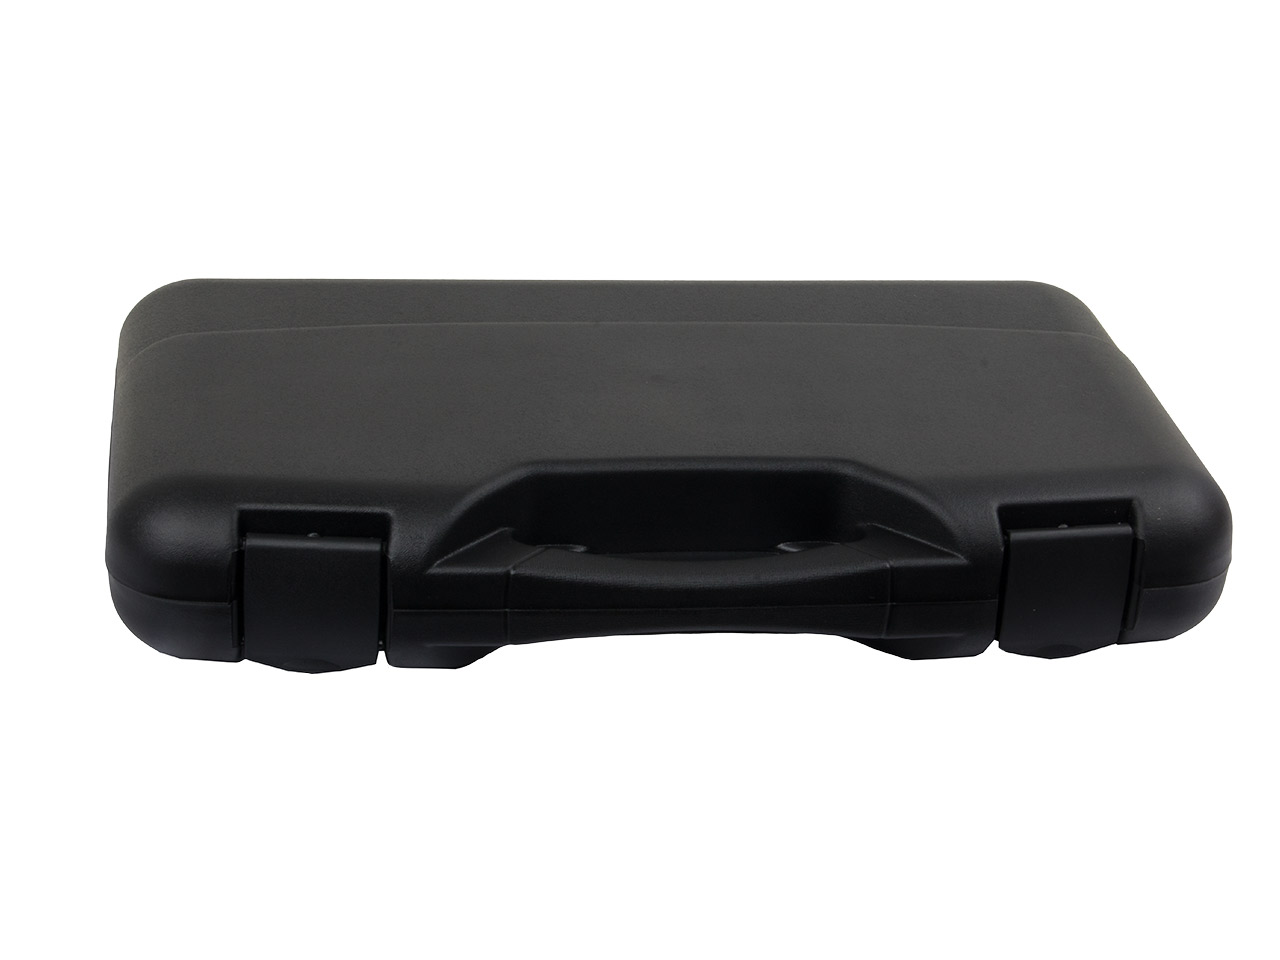 Pistolenkoffer Transportkoffer 47 x 27 x 7,5 cm Polypropylen Noppenschaumstoffeinlage Kunststoffscharniere schwarz